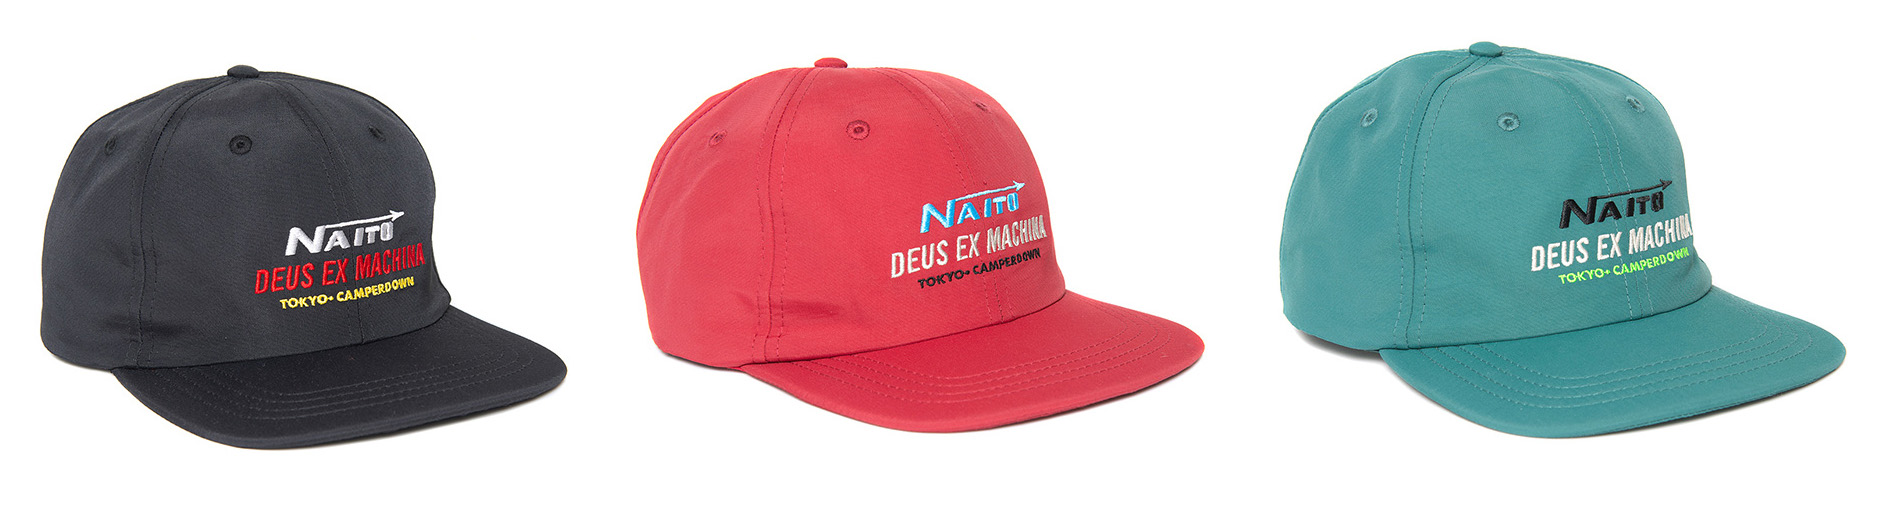 DEUS EX MACHINA Naito Caps